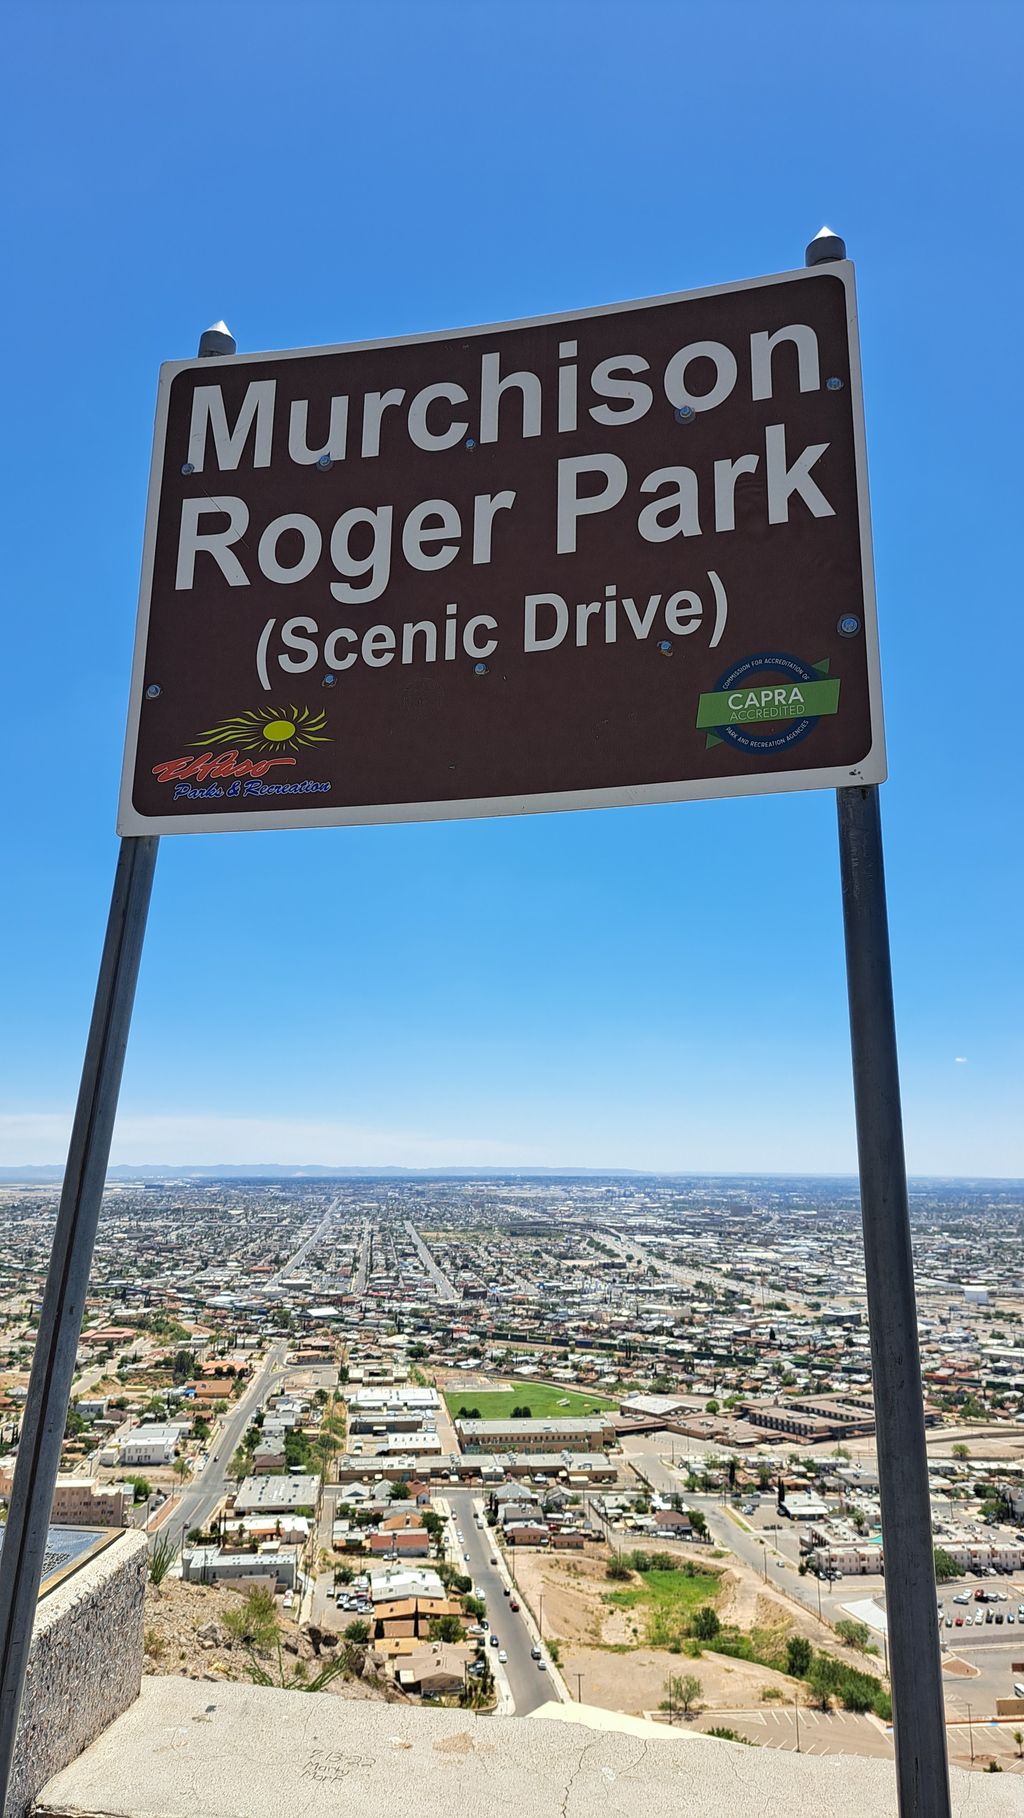 Murchison Rogers Park